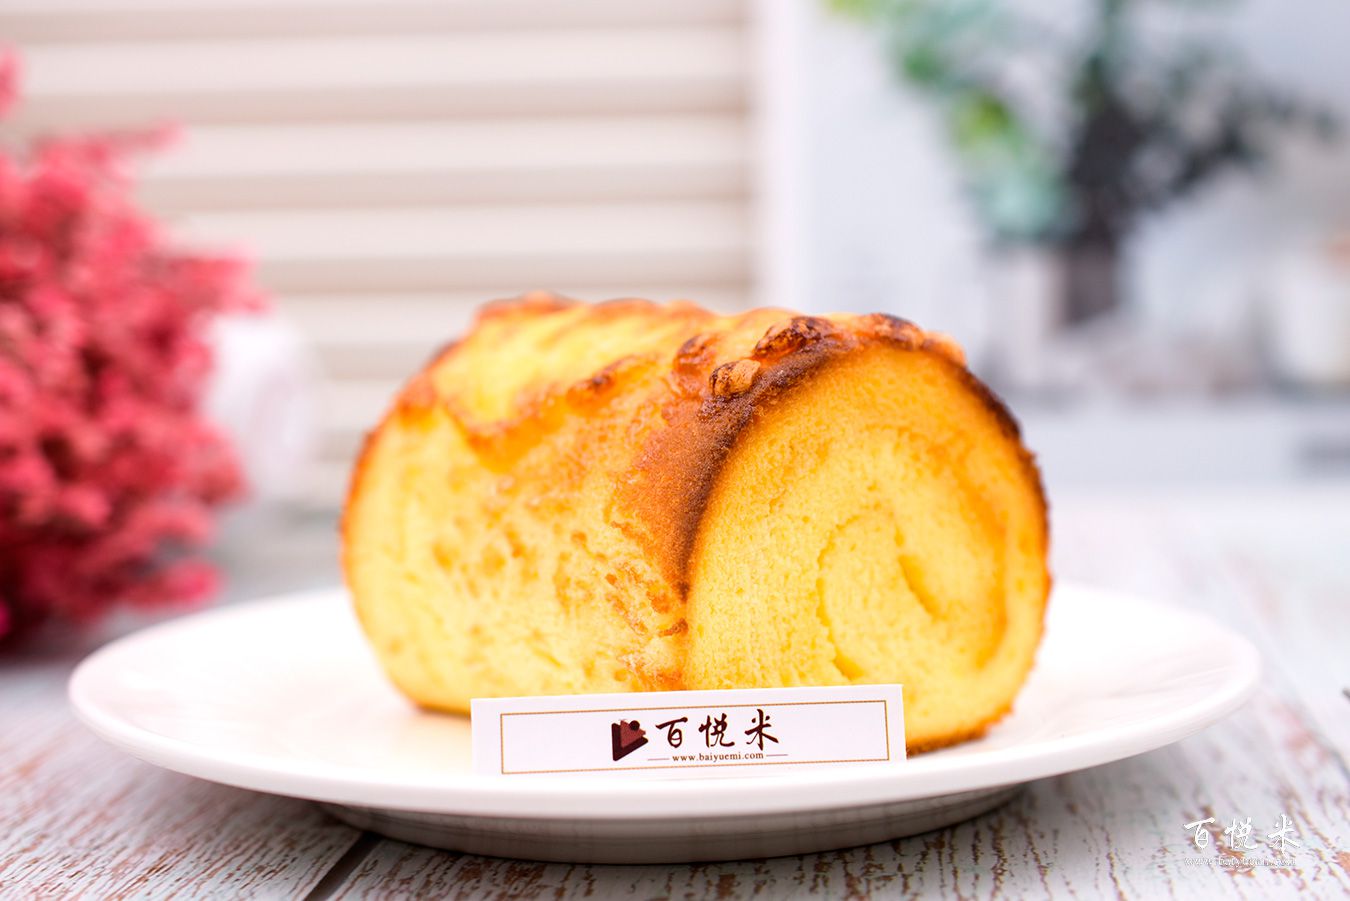 恩格蛋糕卷高清图片大全【蛋糕图片】_577